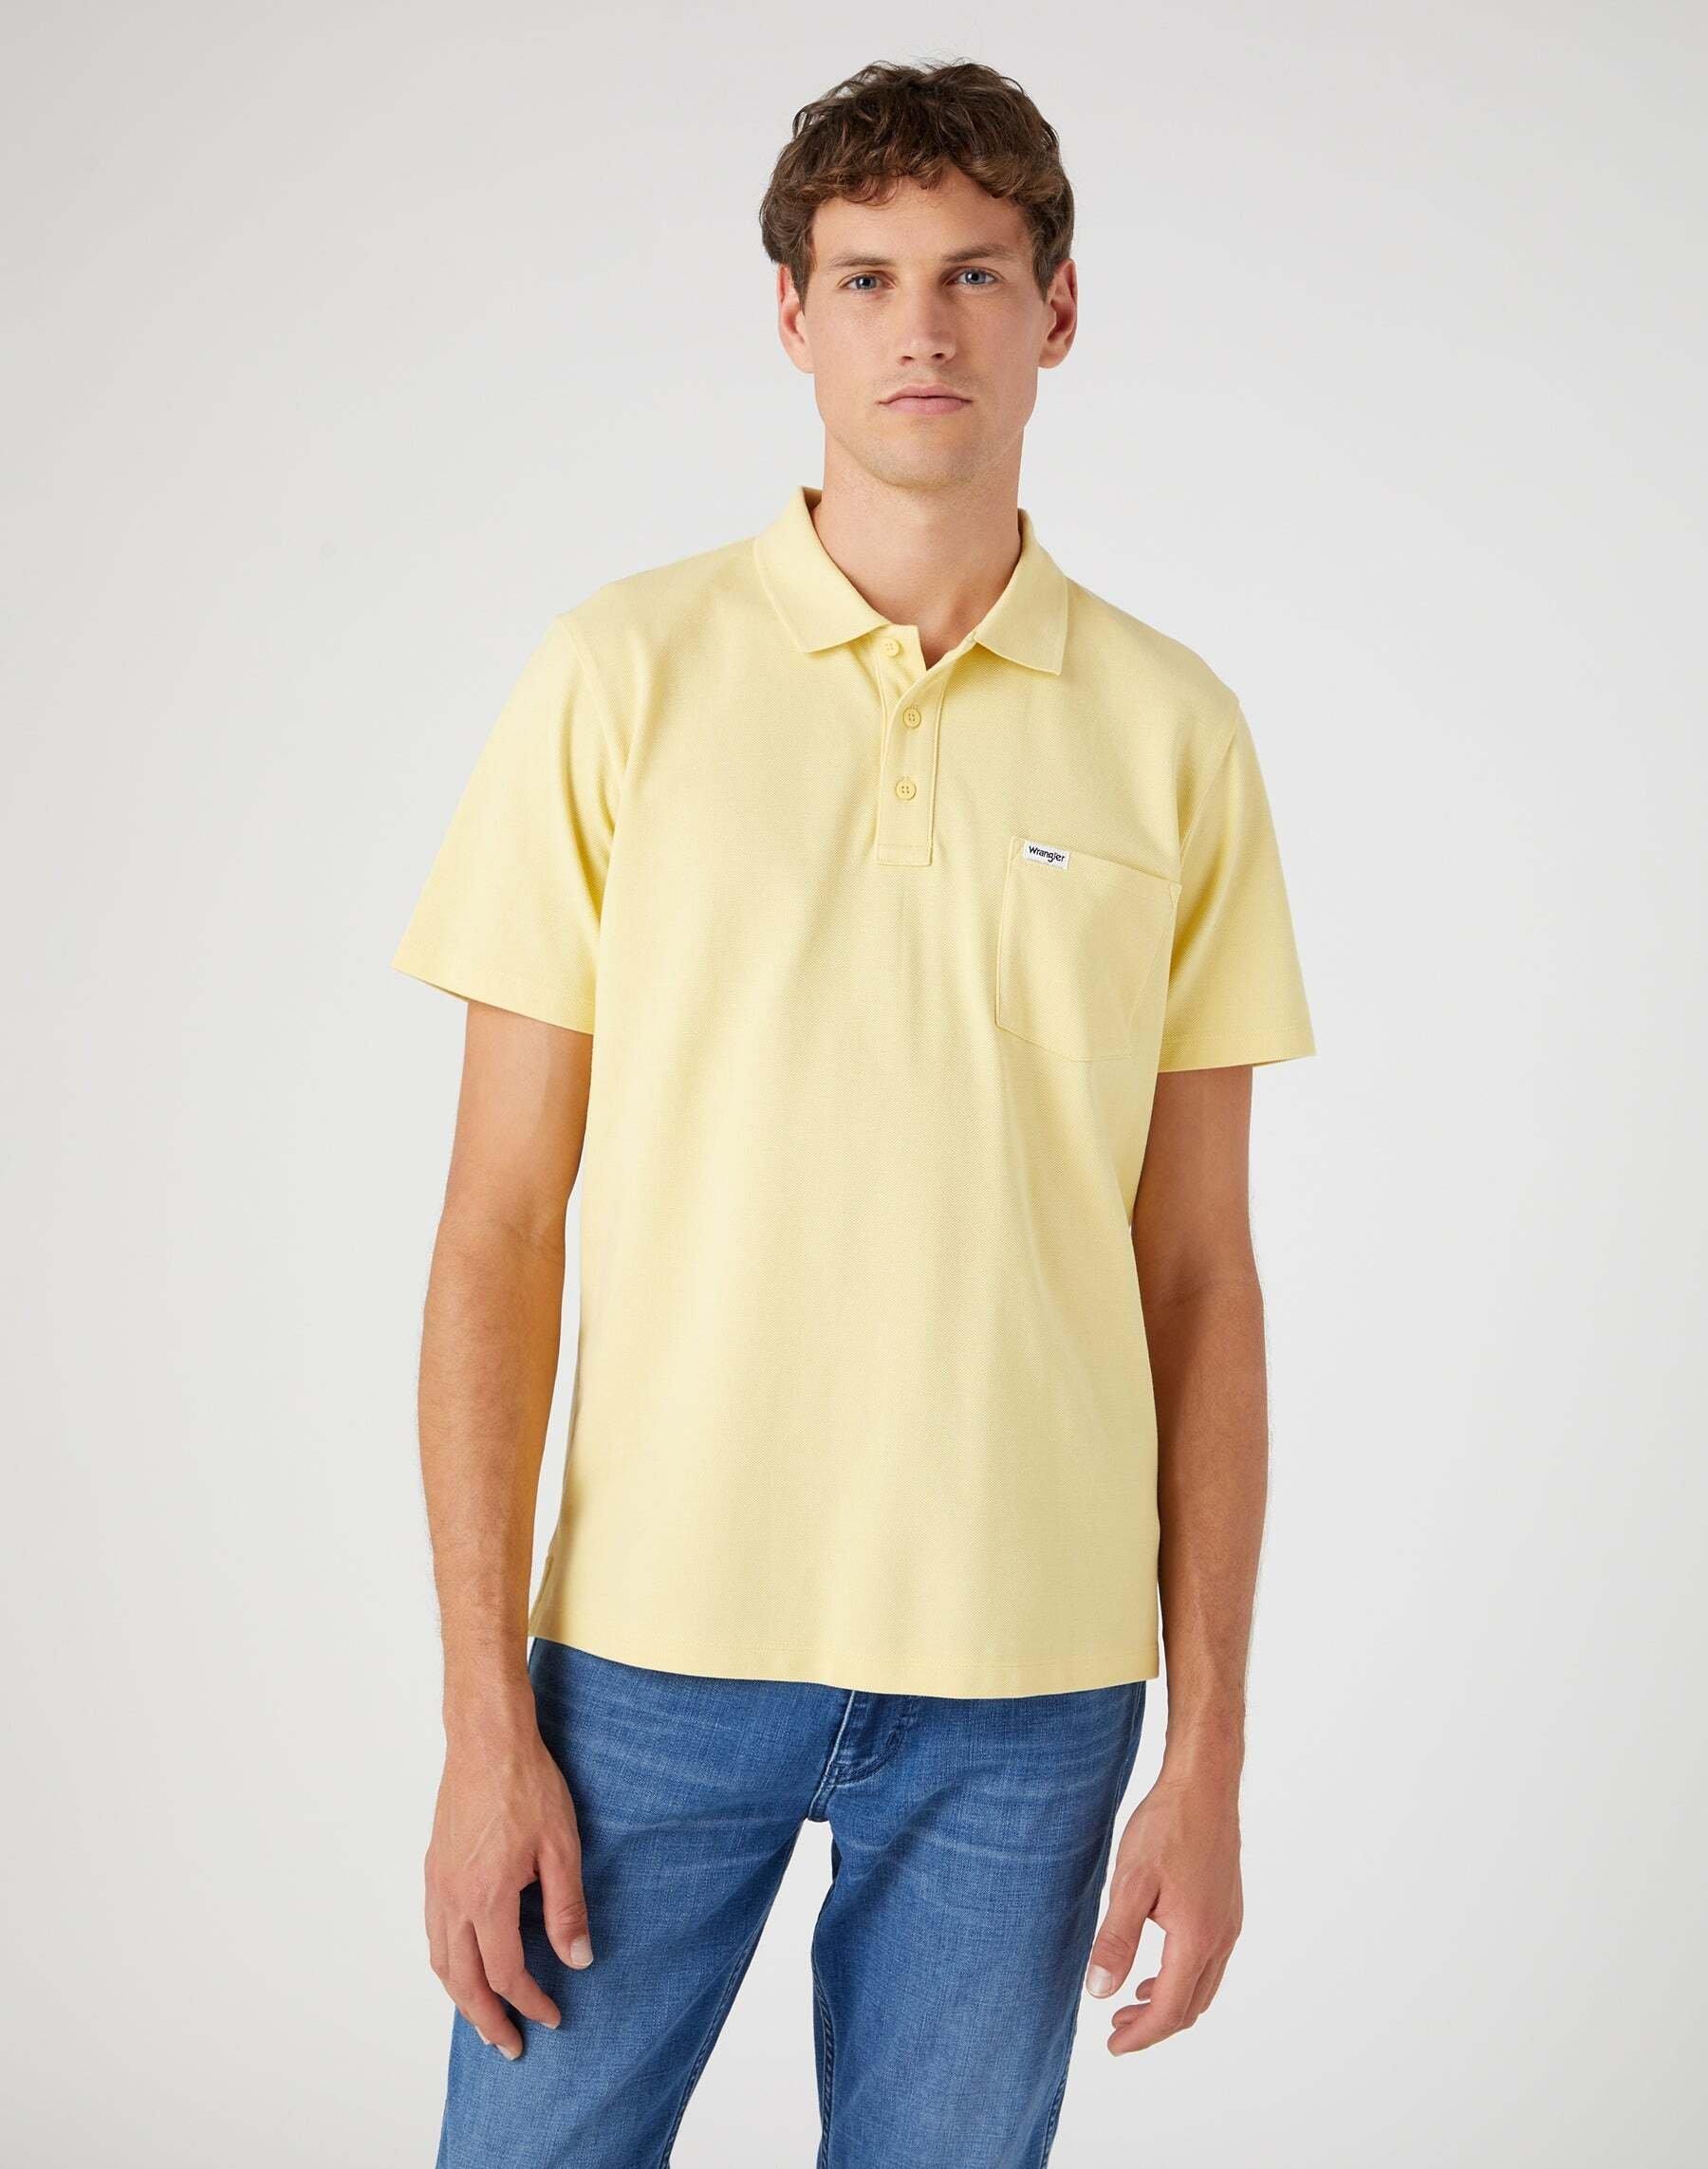 Polo Shirt Herren Gelb Bunt M von Wrangler